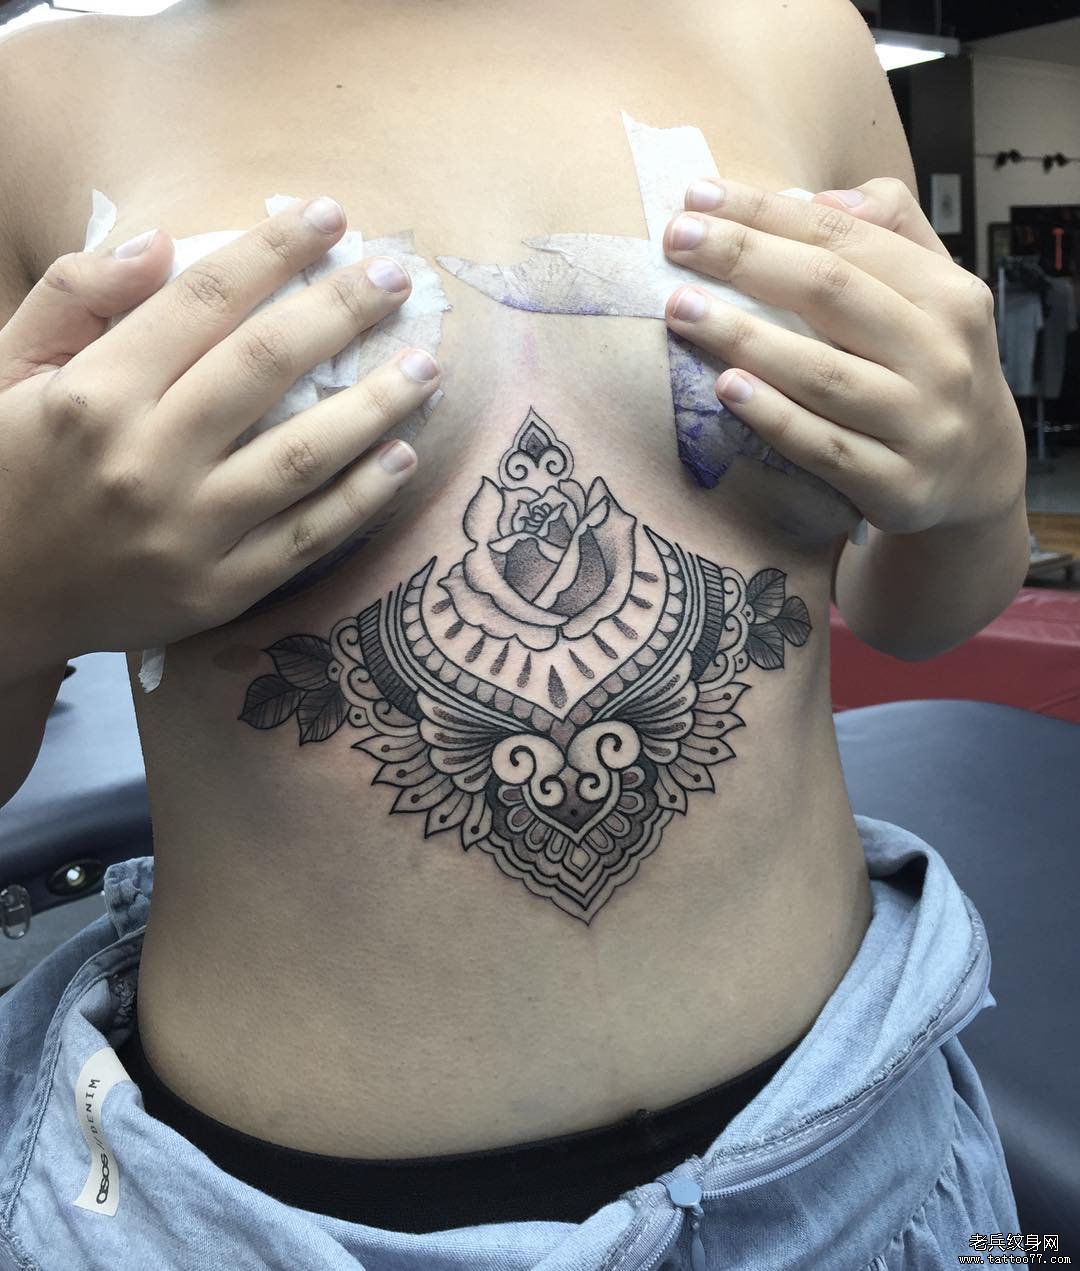 女性胸部梵花纹身tattoo图案